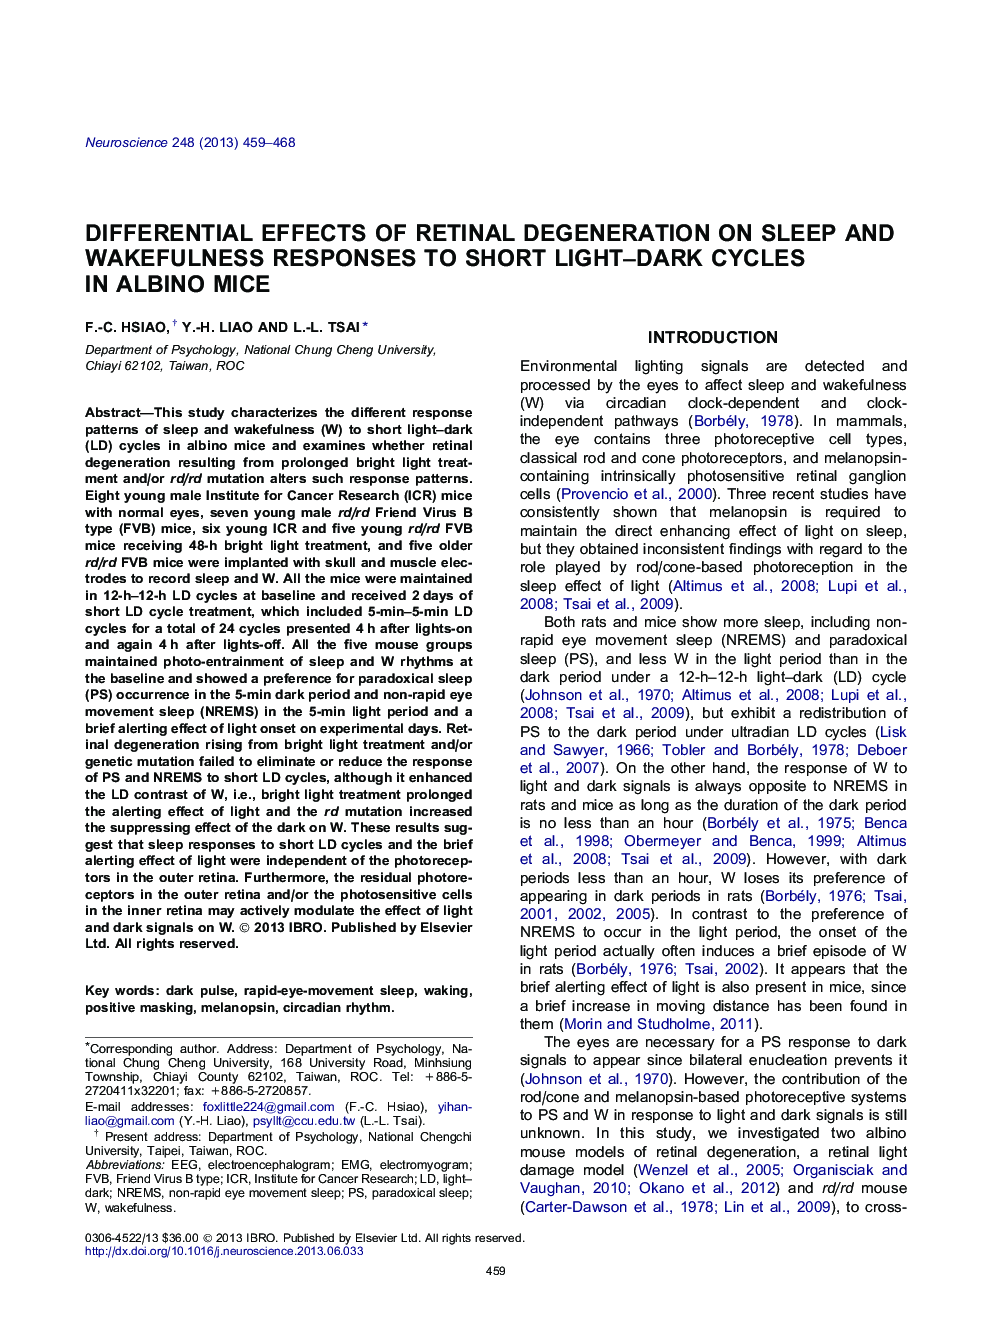 اثرات افتراق دژنراسیون شبکیه بر پاسخ های خواب و بیداری به سیکل های کوتاه تیره در موش های آلبینو 